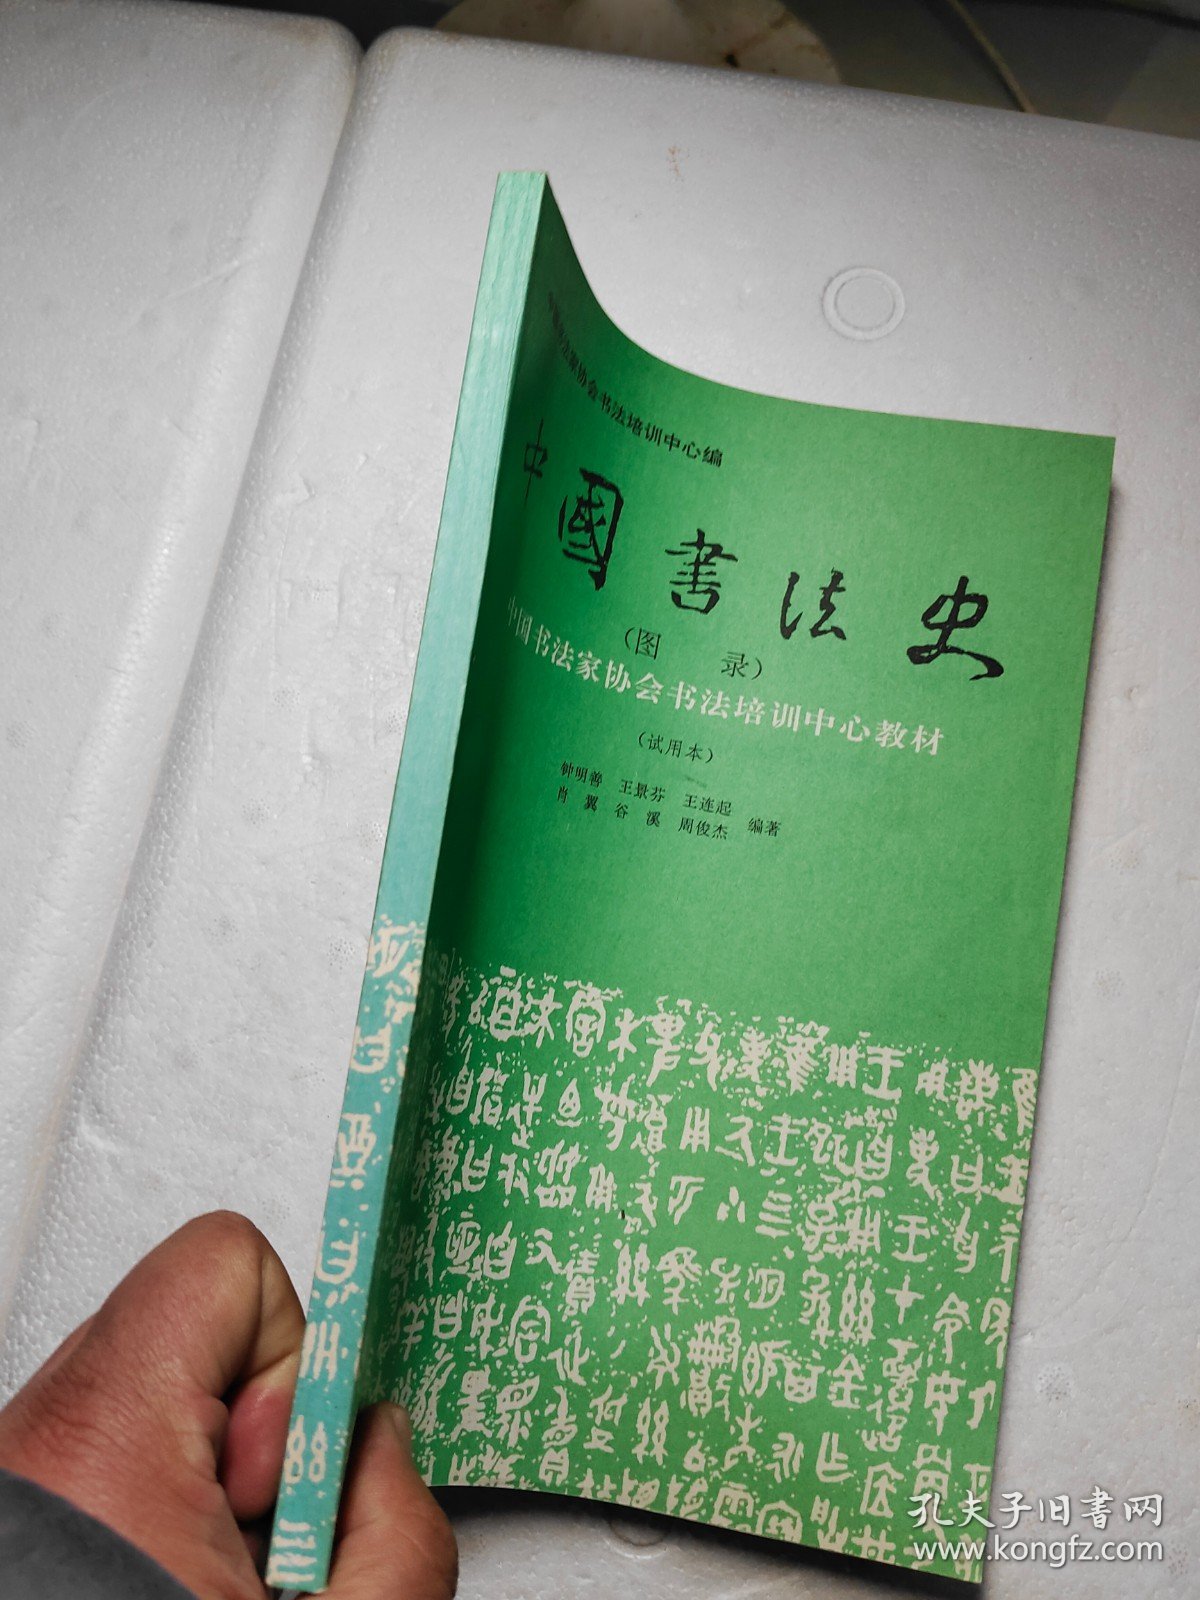 中国书法史图录